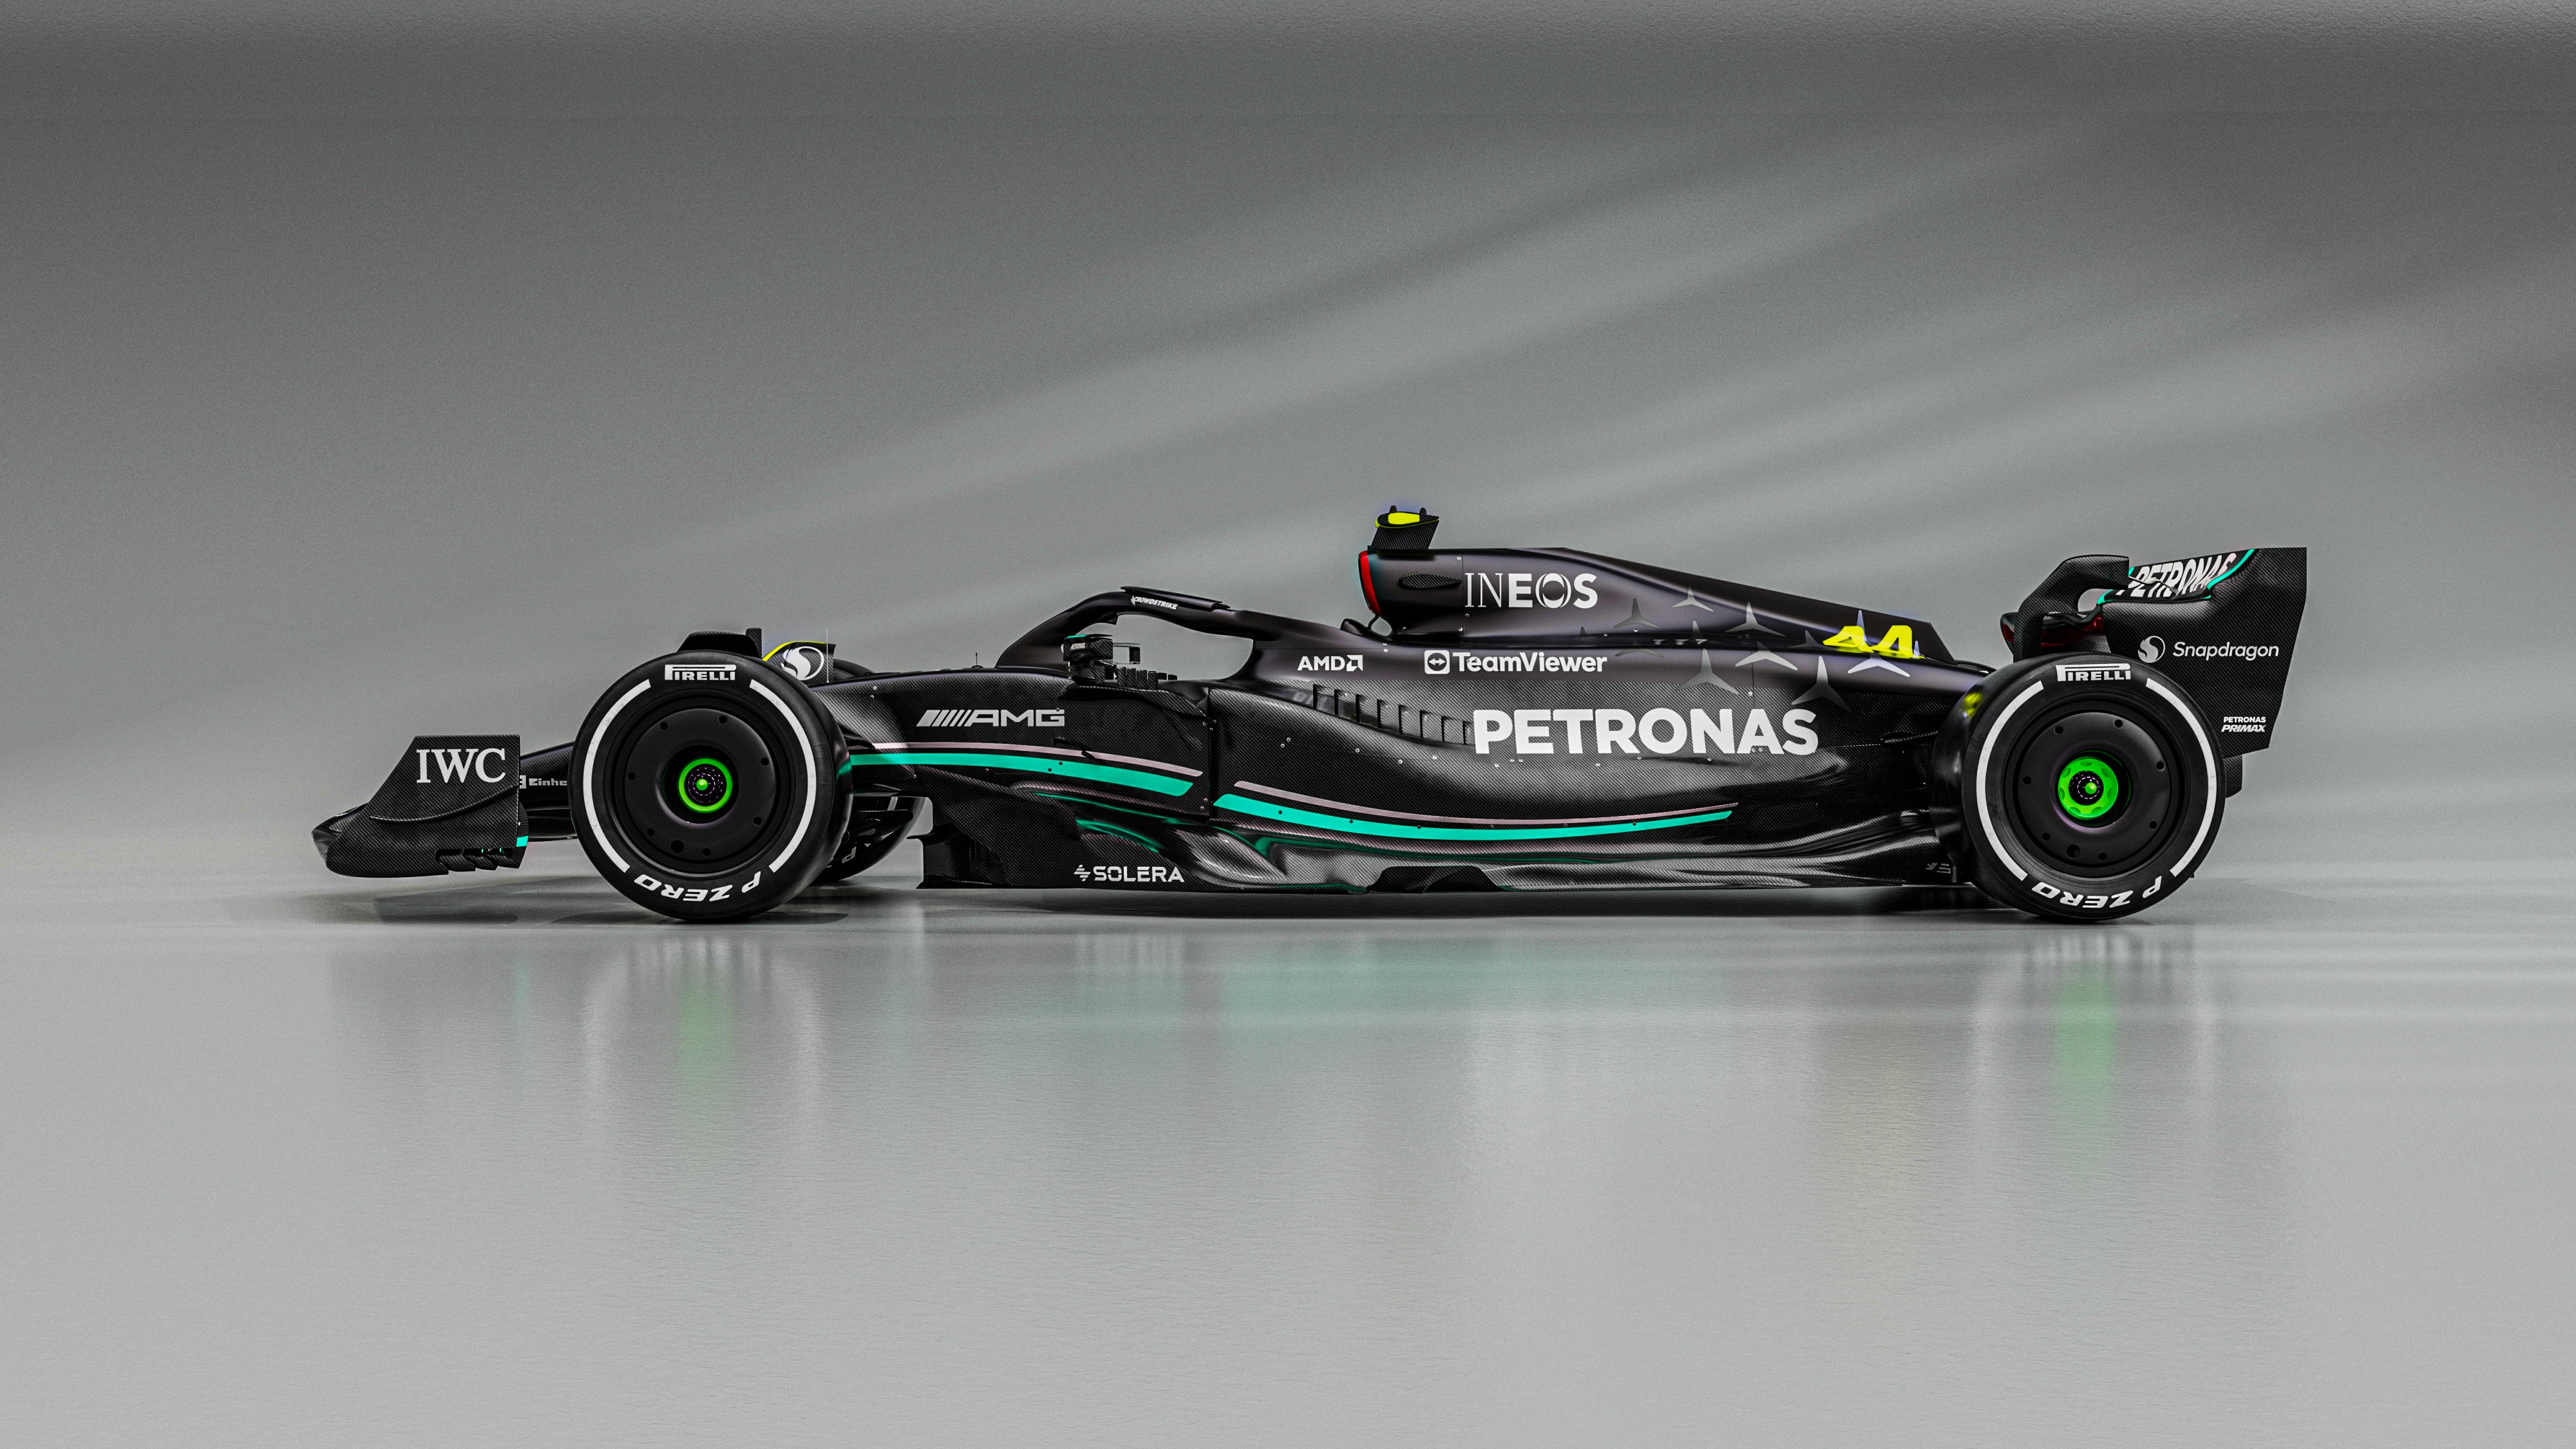 Mercedes AMG PETRONAS F1 Team In Black